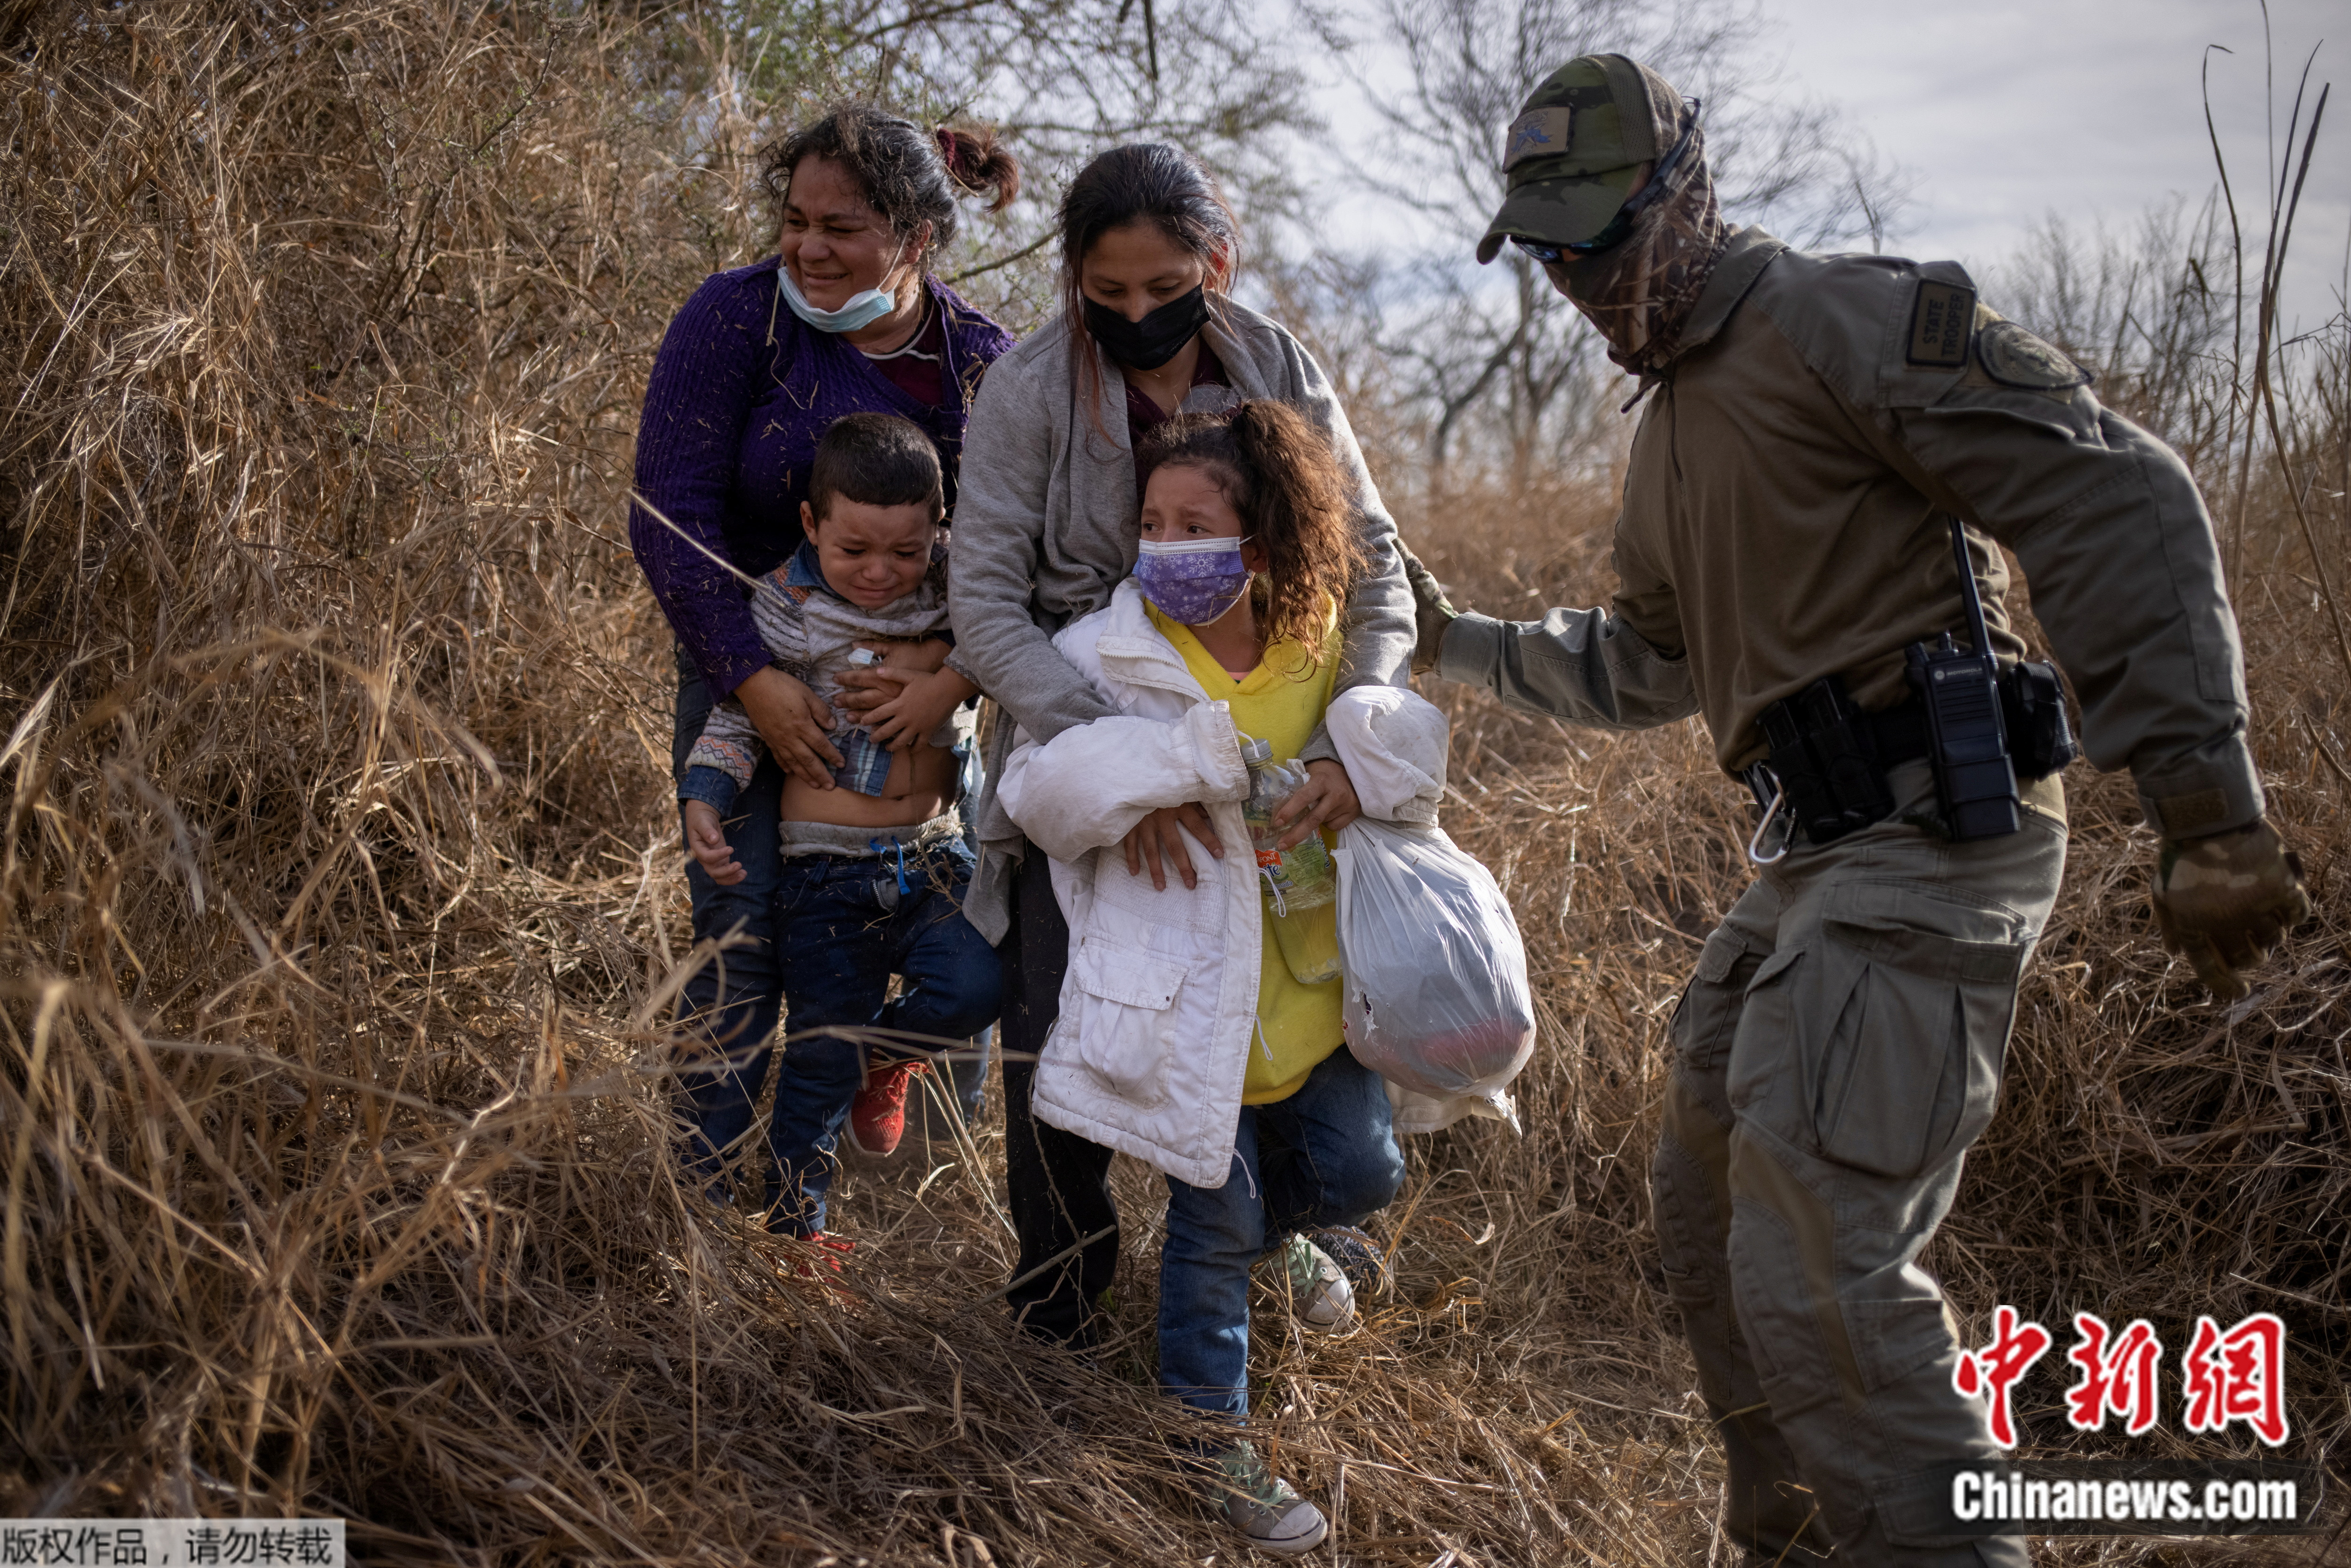 图4：在美国得州里奥格兰德，边境执法者要求躲在灌木丛中的非法移民家庭走出来，以便将他们戴上手铐逮捕并转移。